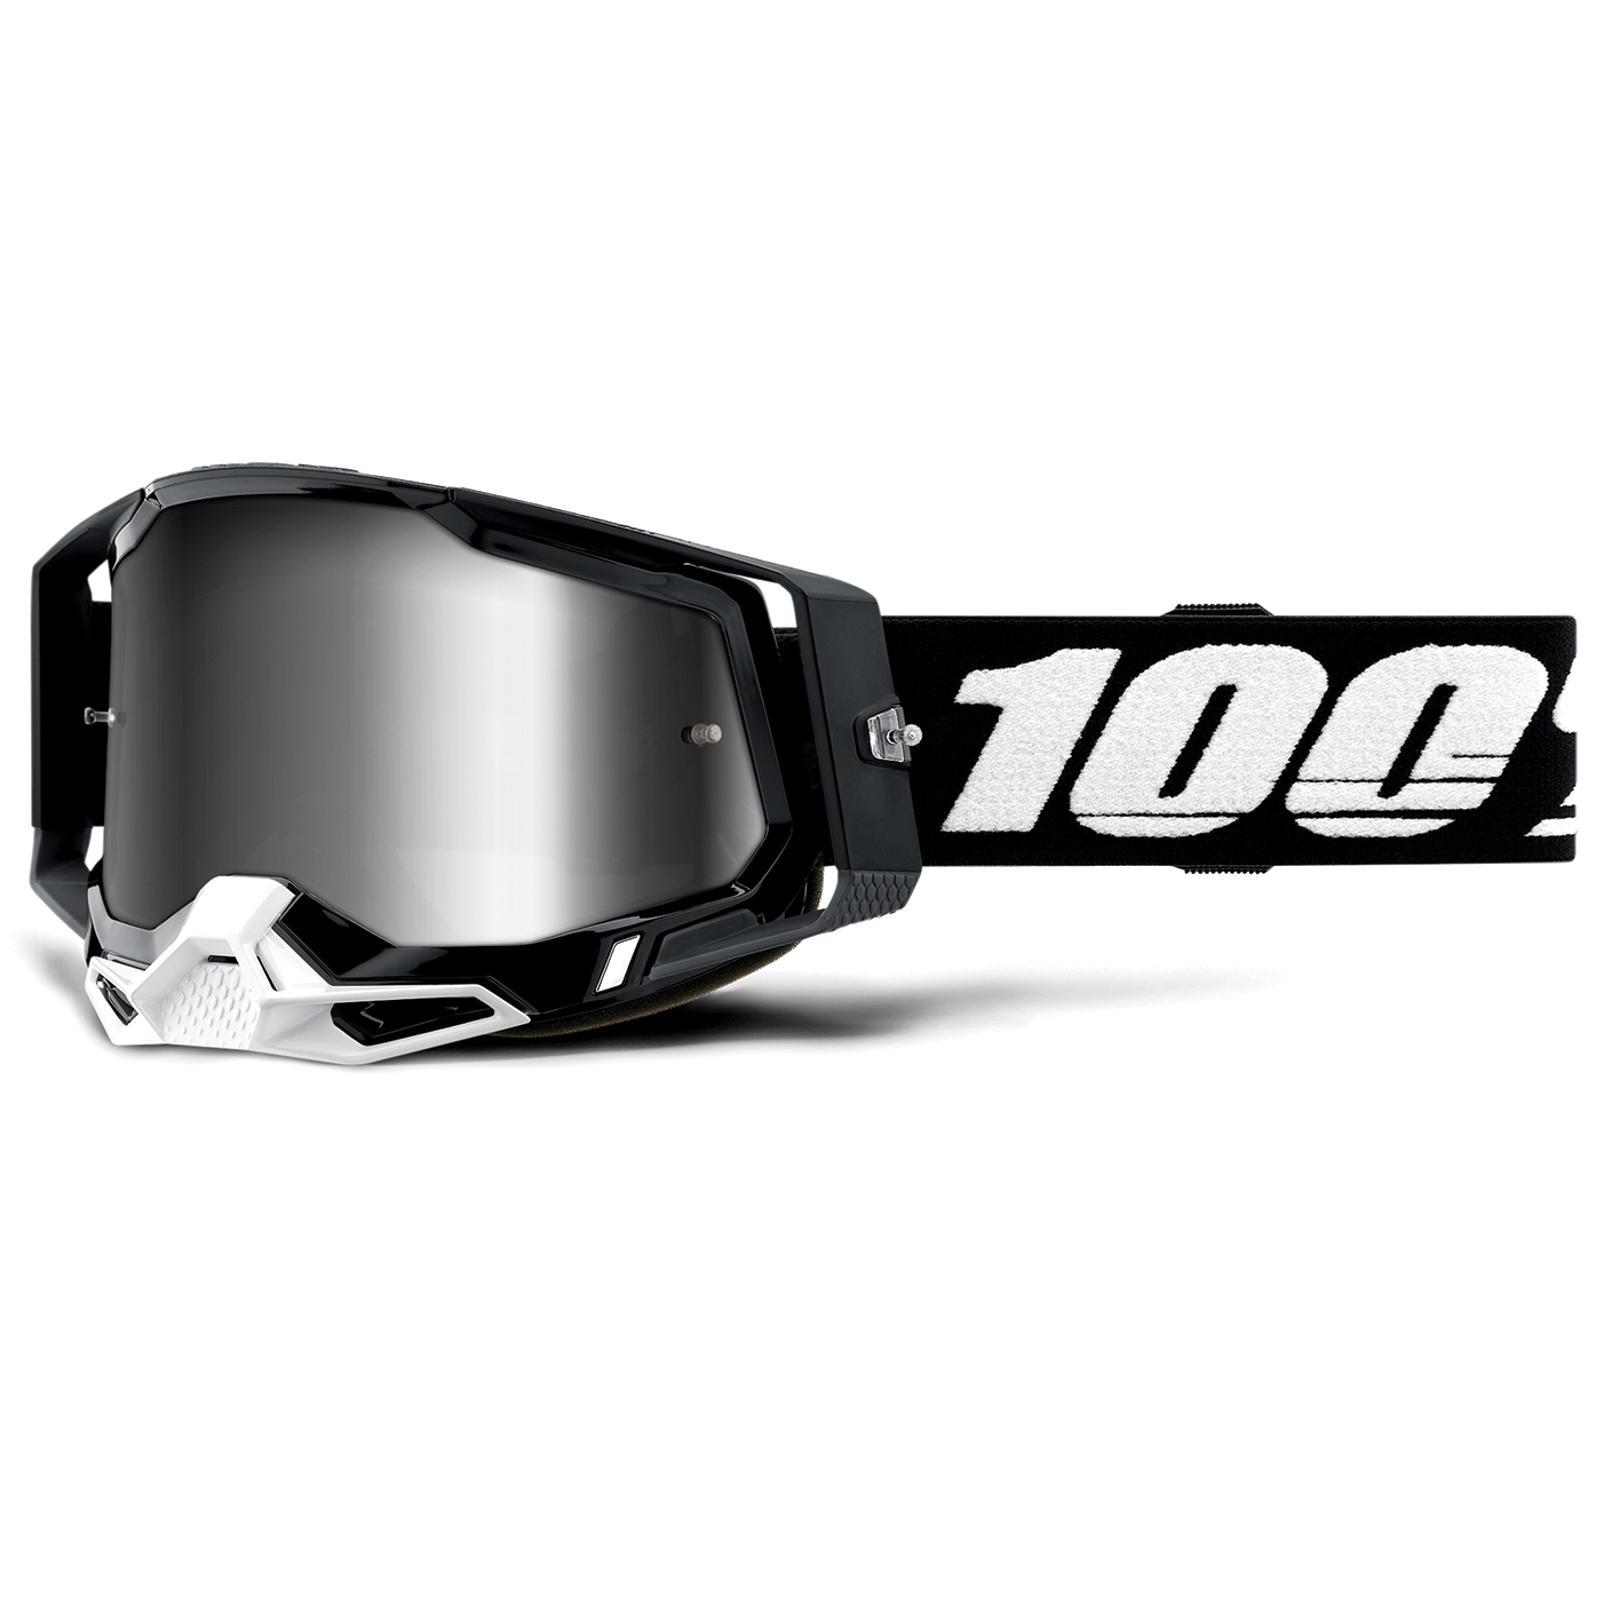 100% Crossglasses Racecraft 2 Lustrzane okulary goglowe DH MTB MX Downhill FR Zaskakująca wyjątkowa wartość, pojawiła się nowa praca